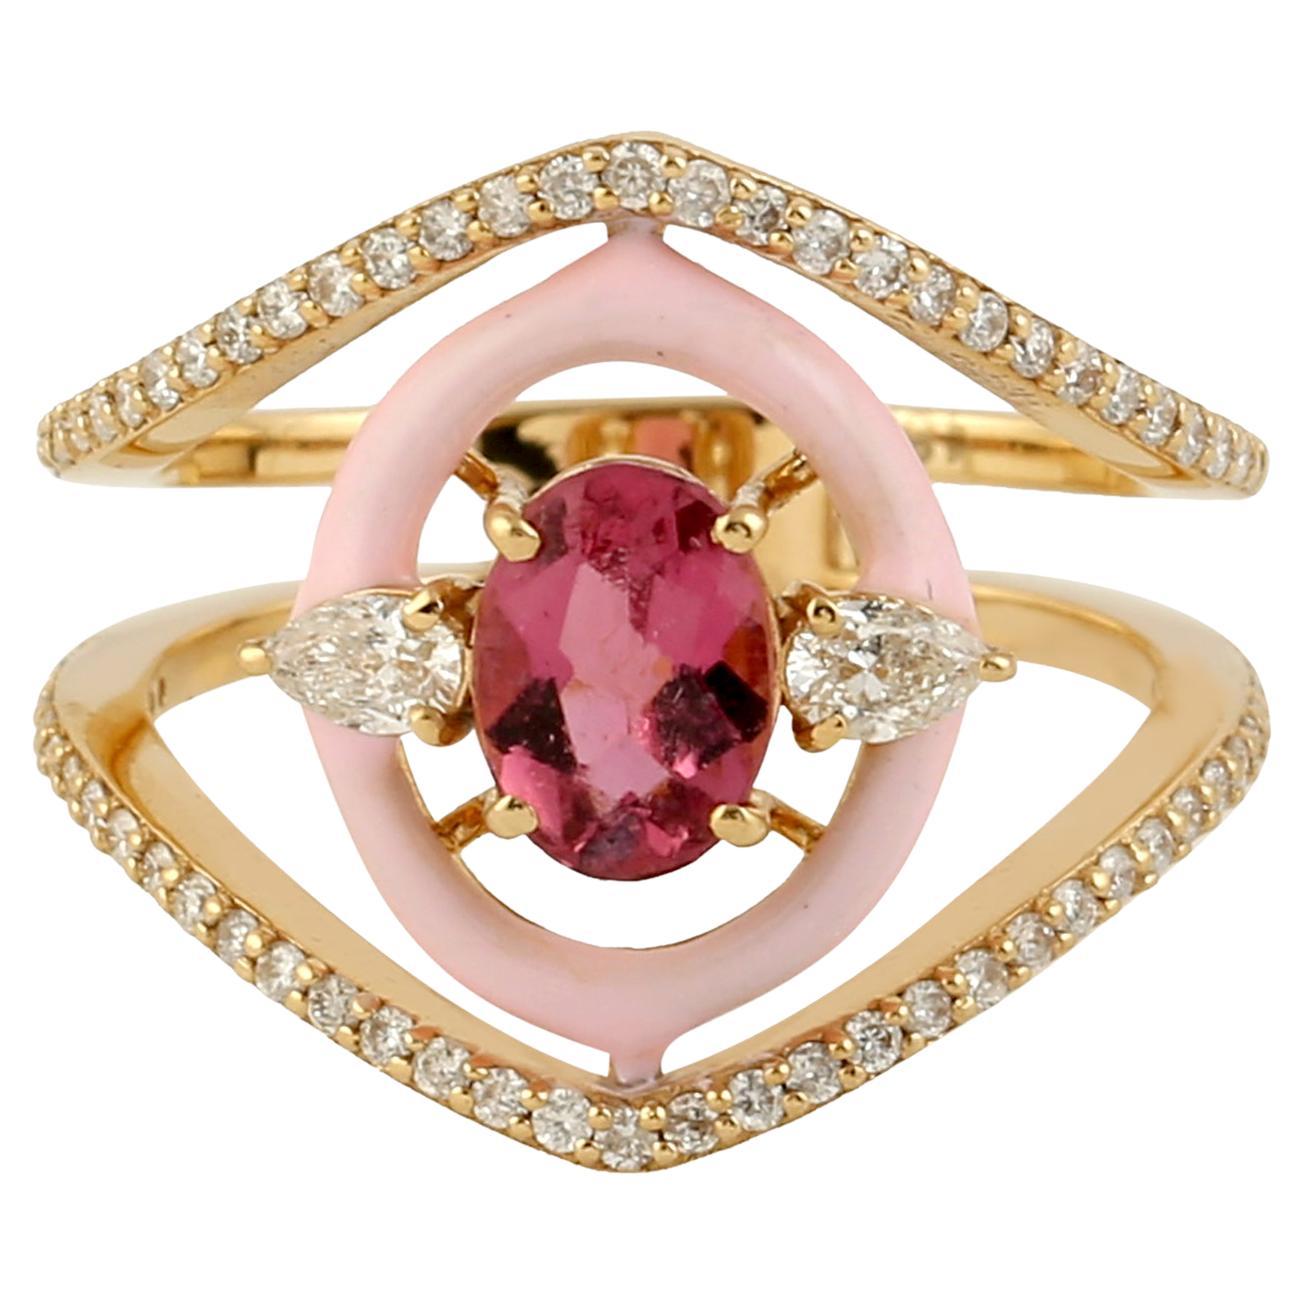 Rose Cut Pink Tourmaline Ring w/ Pink Enamel & Diamonds Made In 18k Yellow Gold